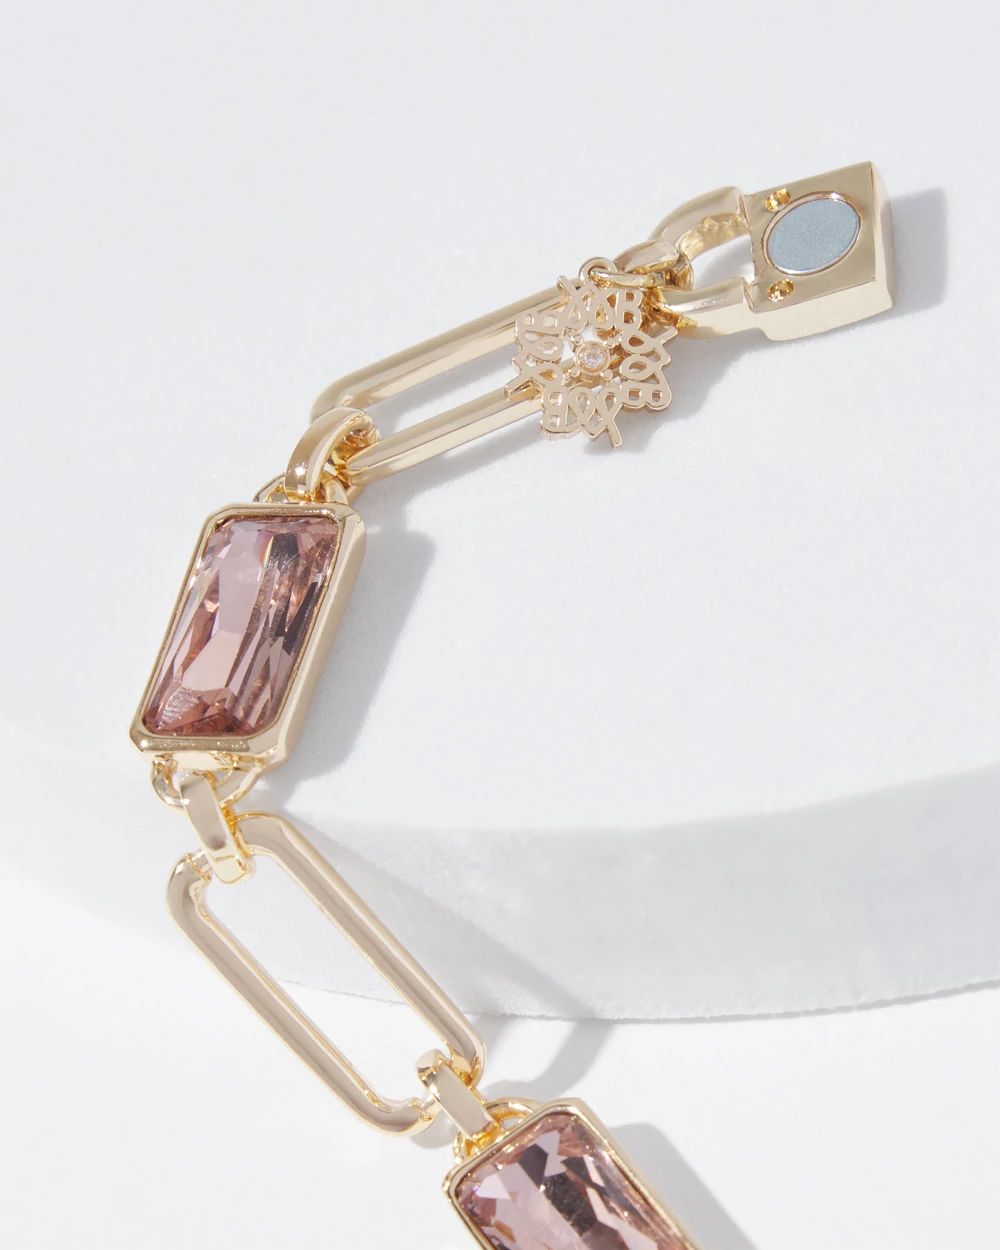 Gold Bezel Rose Crystal Magnetic Bracelet click to view larger image.